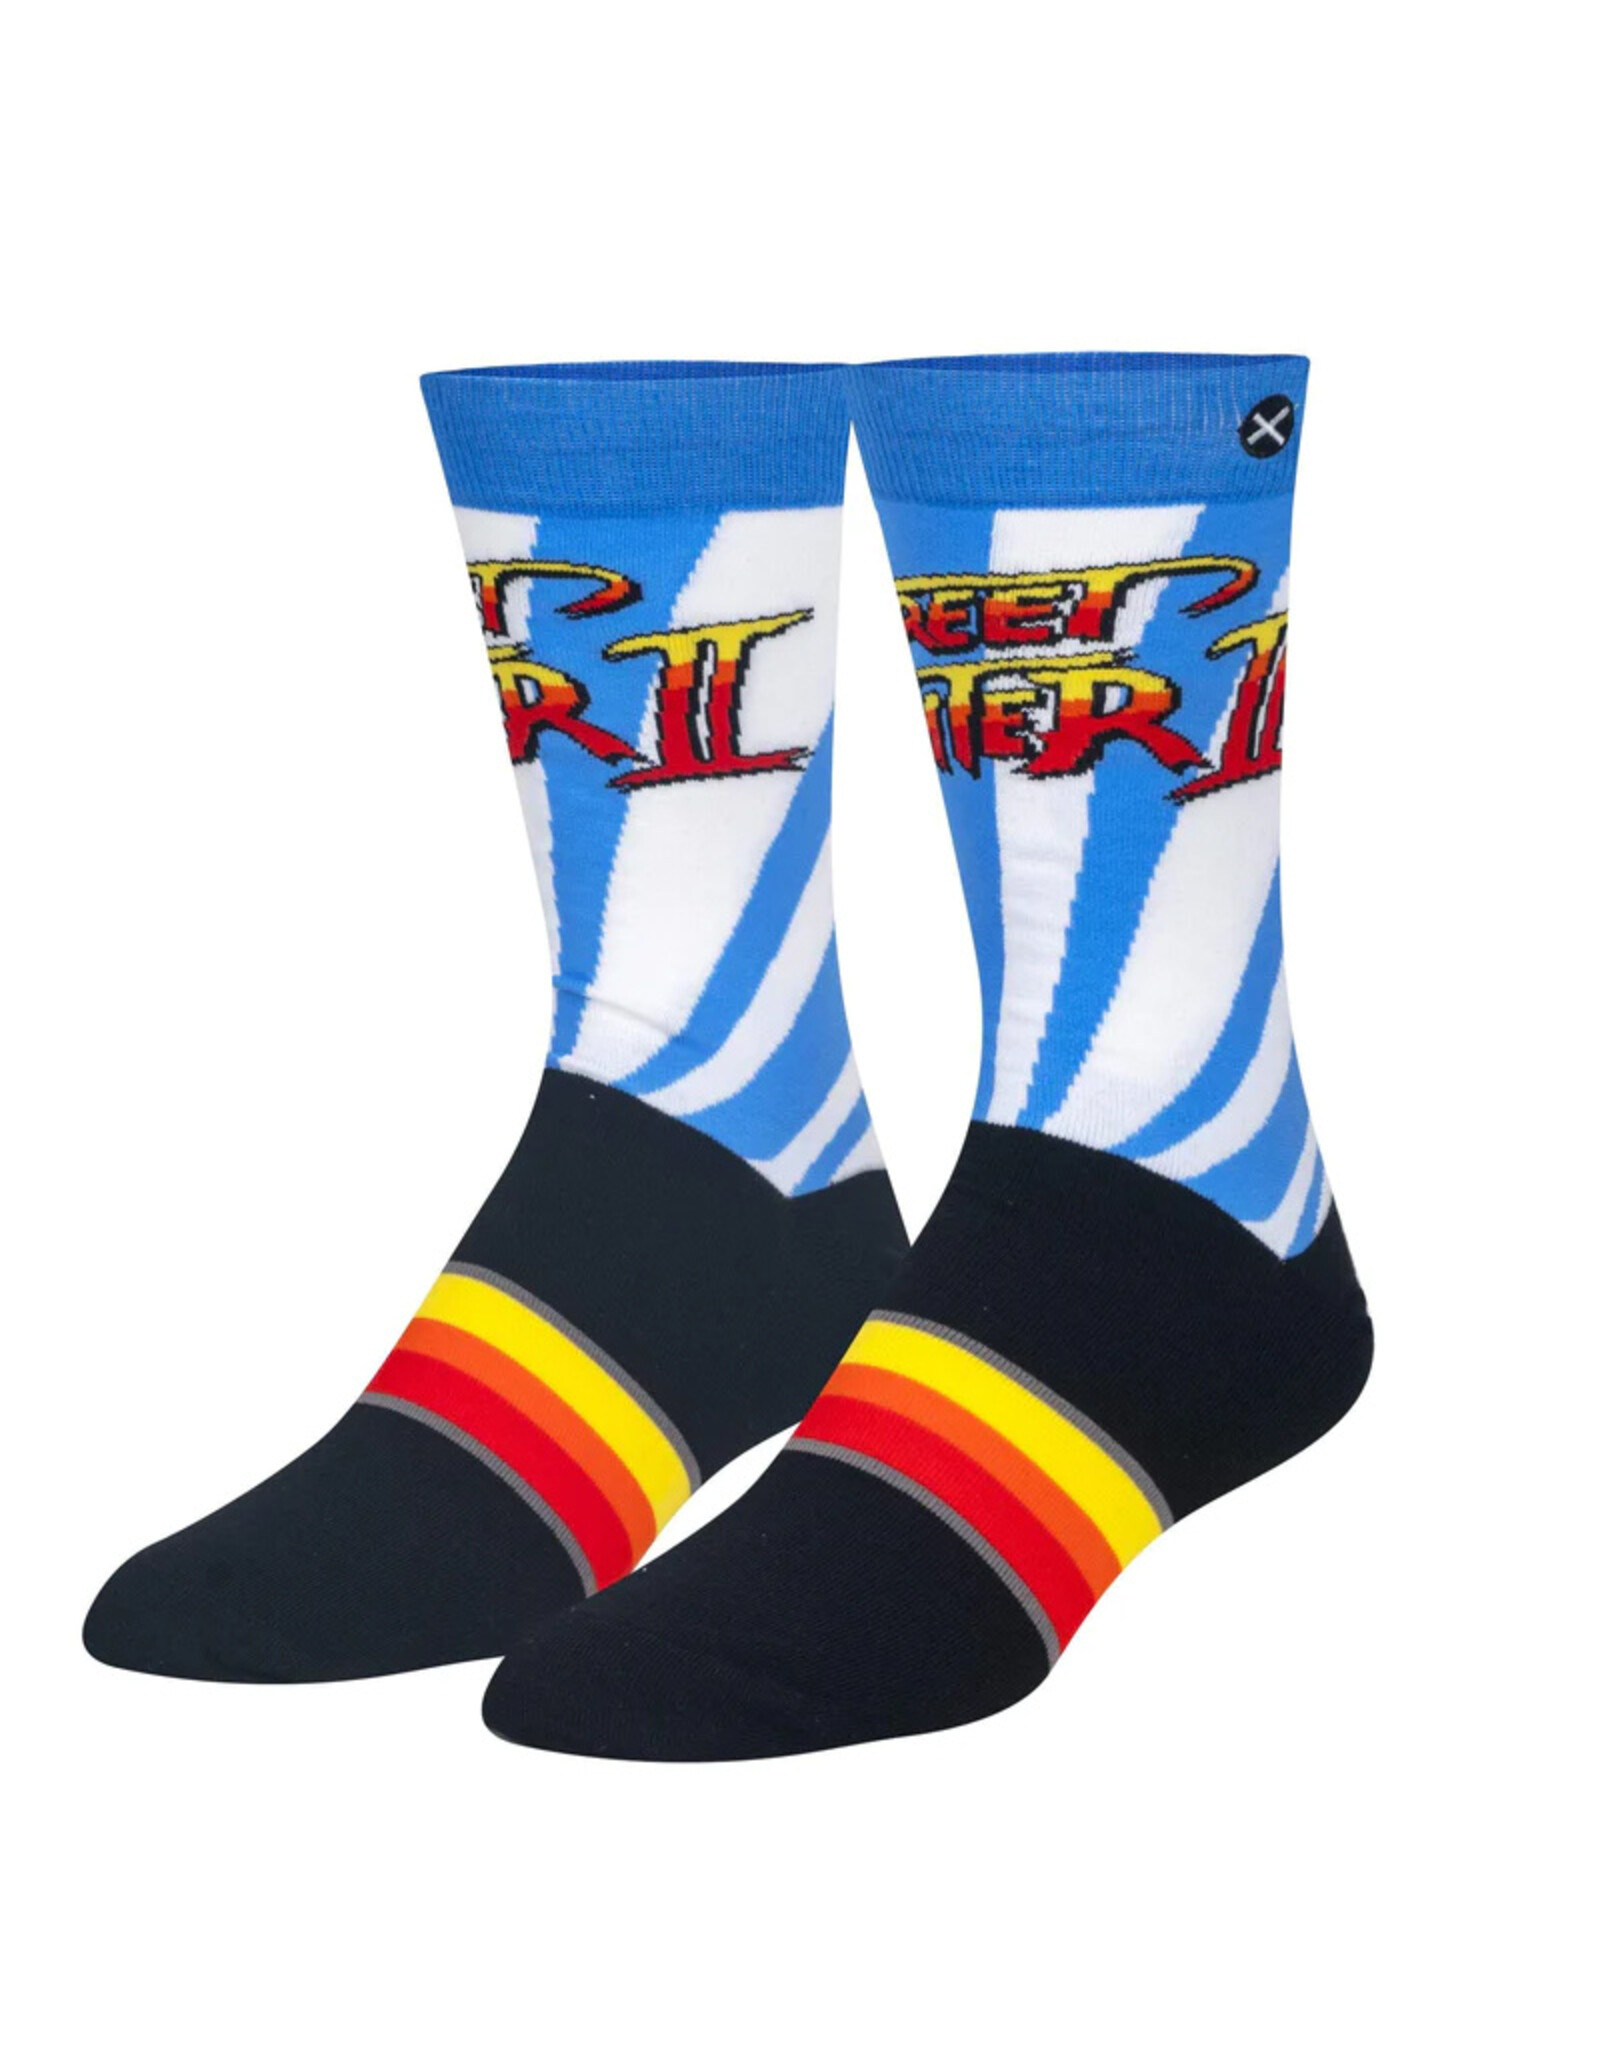 Odd Sox Odd Sox: Street Fighter II Logo Socks